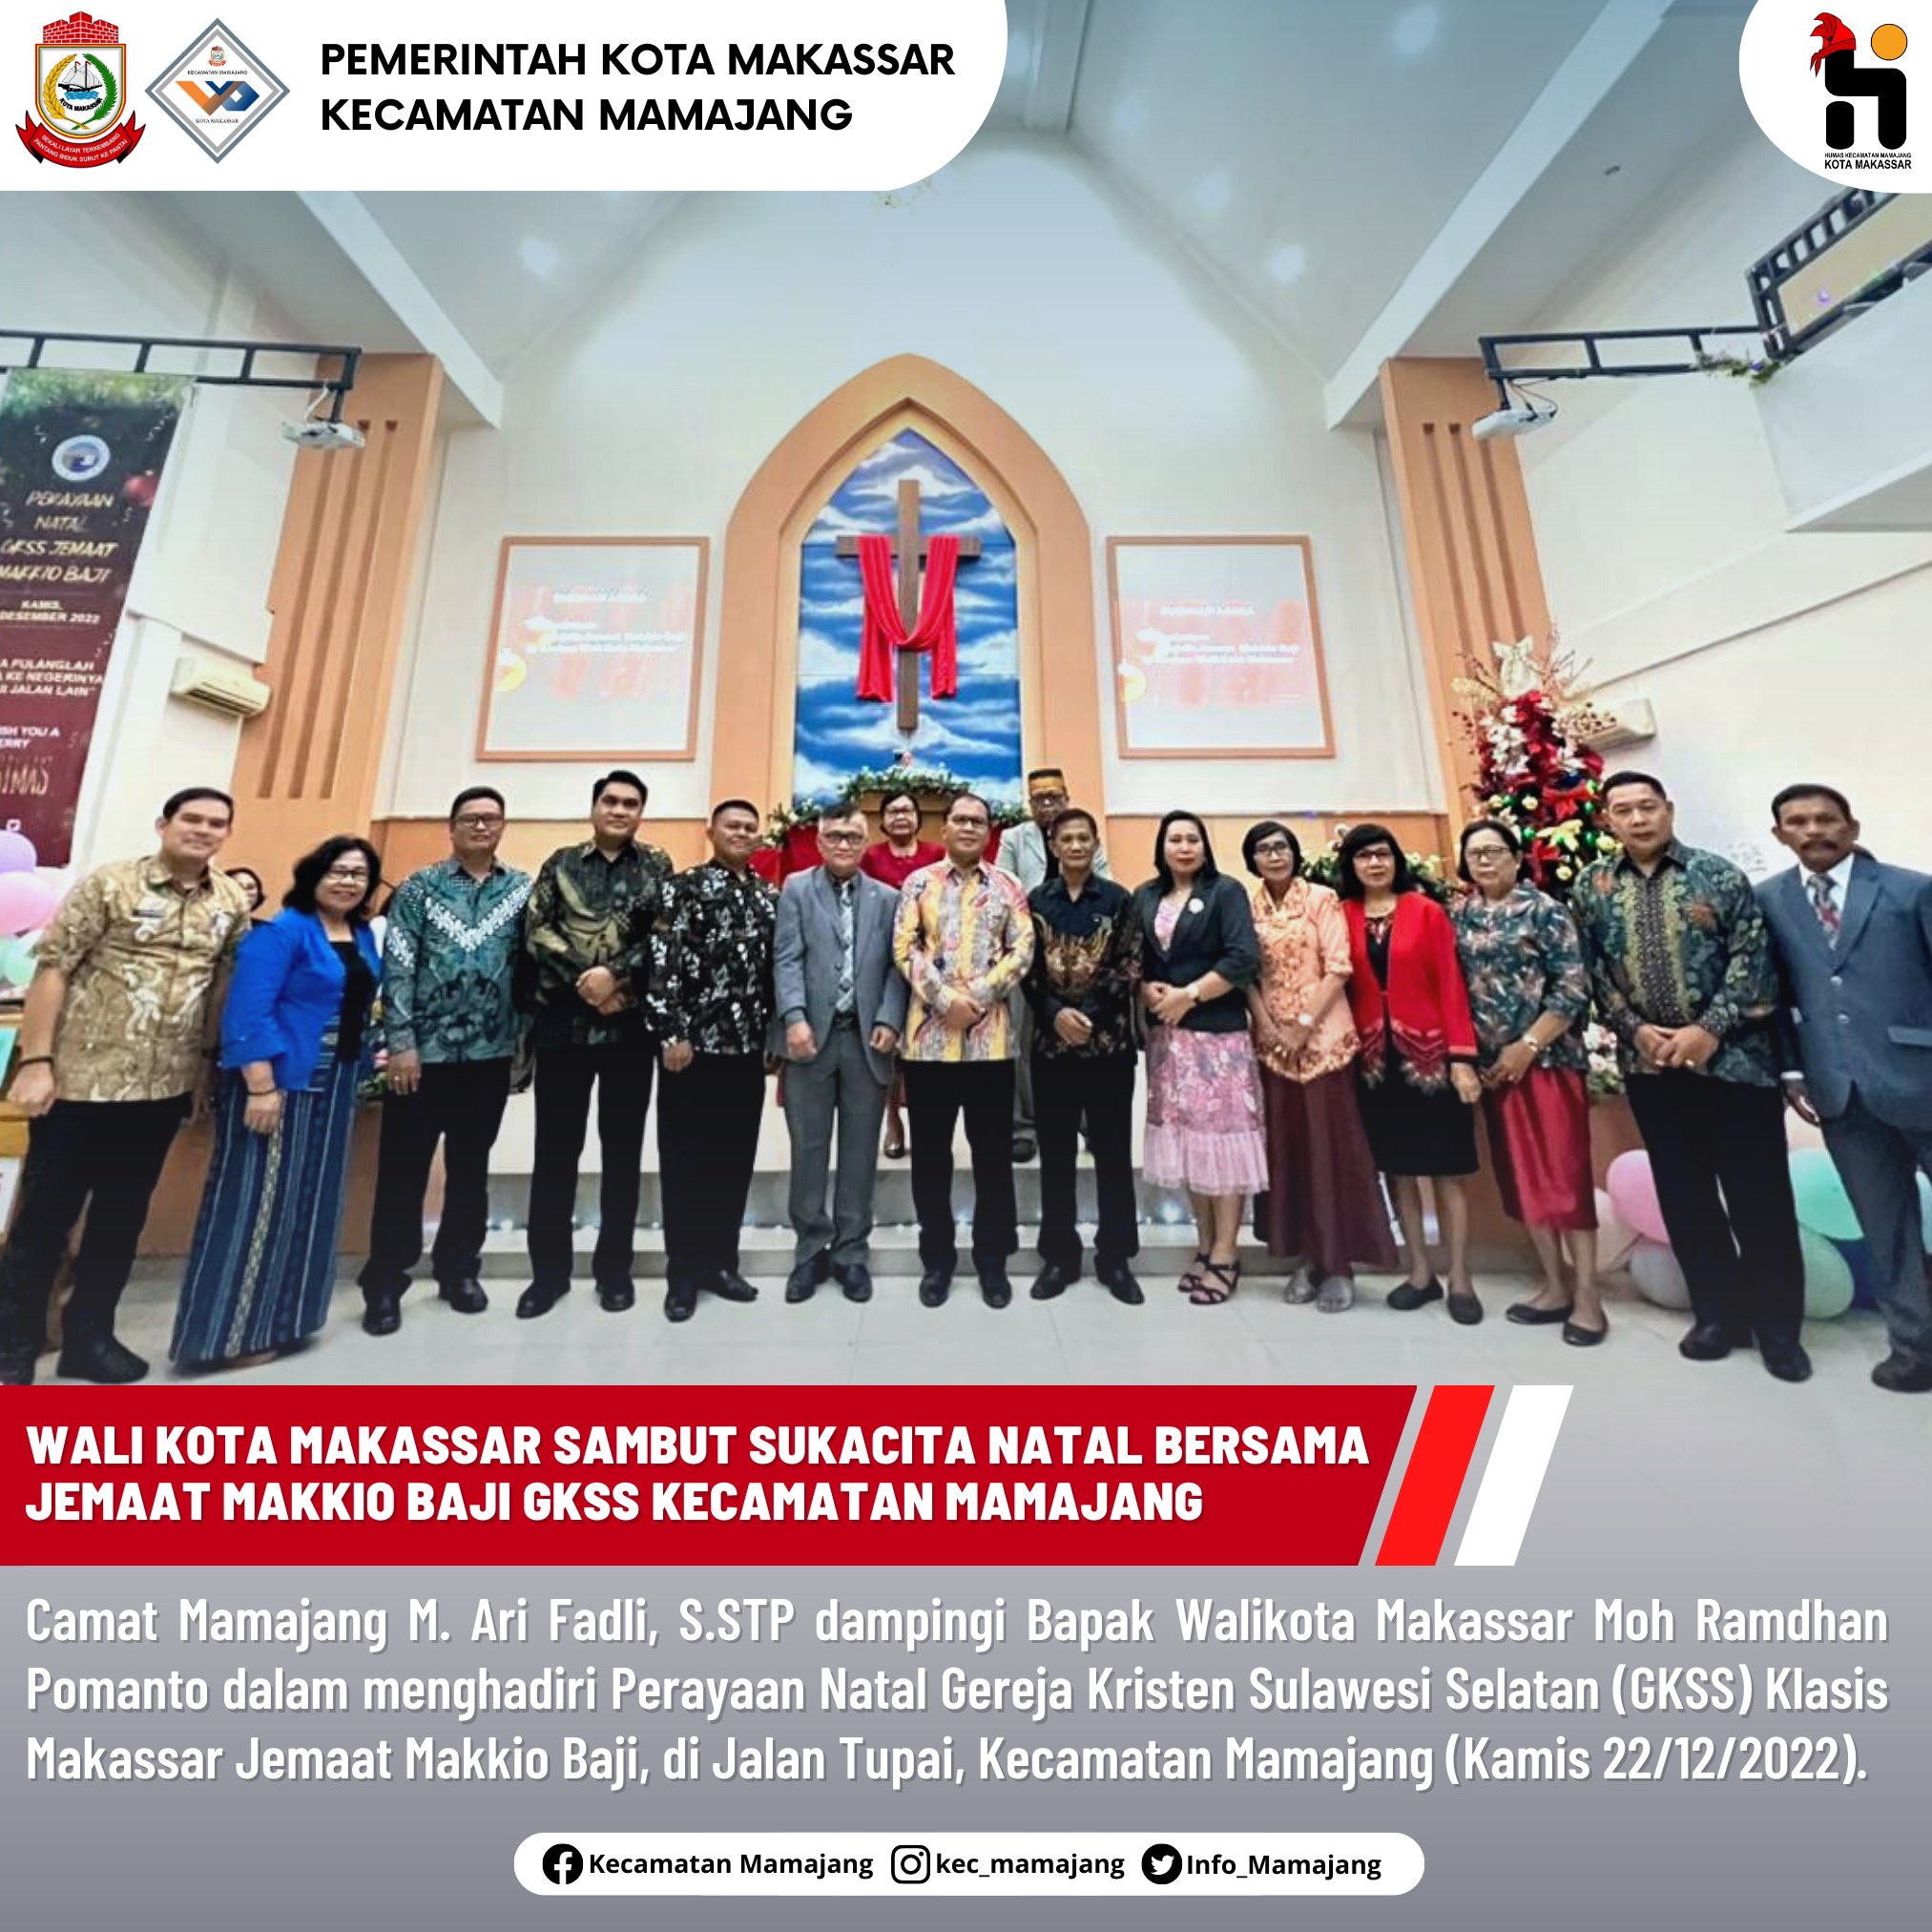 Gambar Camat Mamajang M. Ari Fadli, S.STP dampingi Bapak Walikota Makassar Moh Ramdhan Pomanto dalam menghadiri Perayaan Natal GKSS Klasis Makassar Jemaat Makkio Baji,